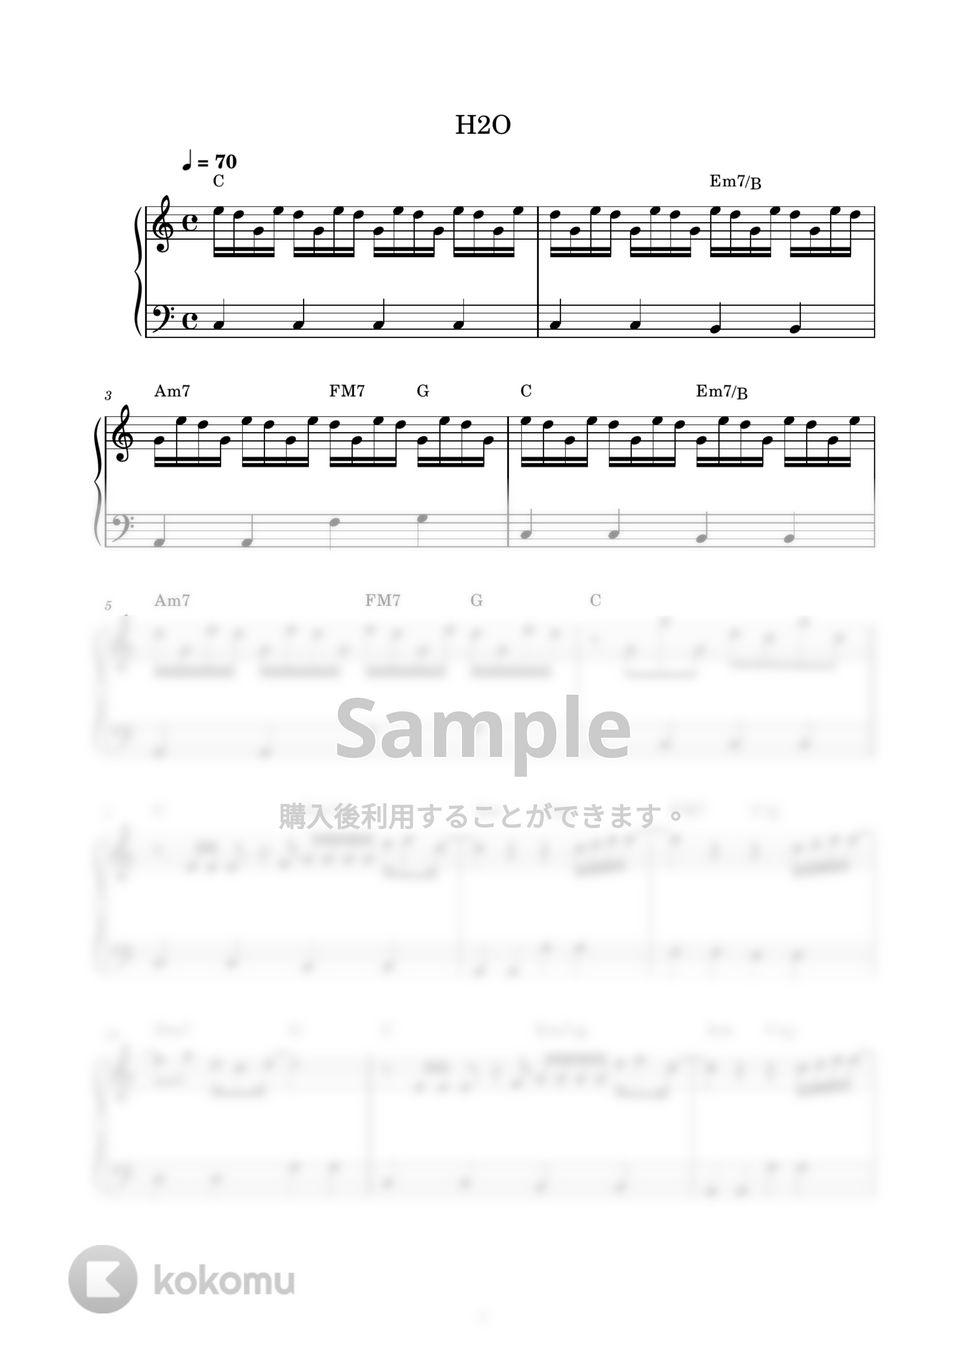 H2O - 想い出がいっぱい (ピアノ楽譜 / かんたん両手 / 歌詞付き / ドレミ付き / 初心者向き) by piano.tokyo